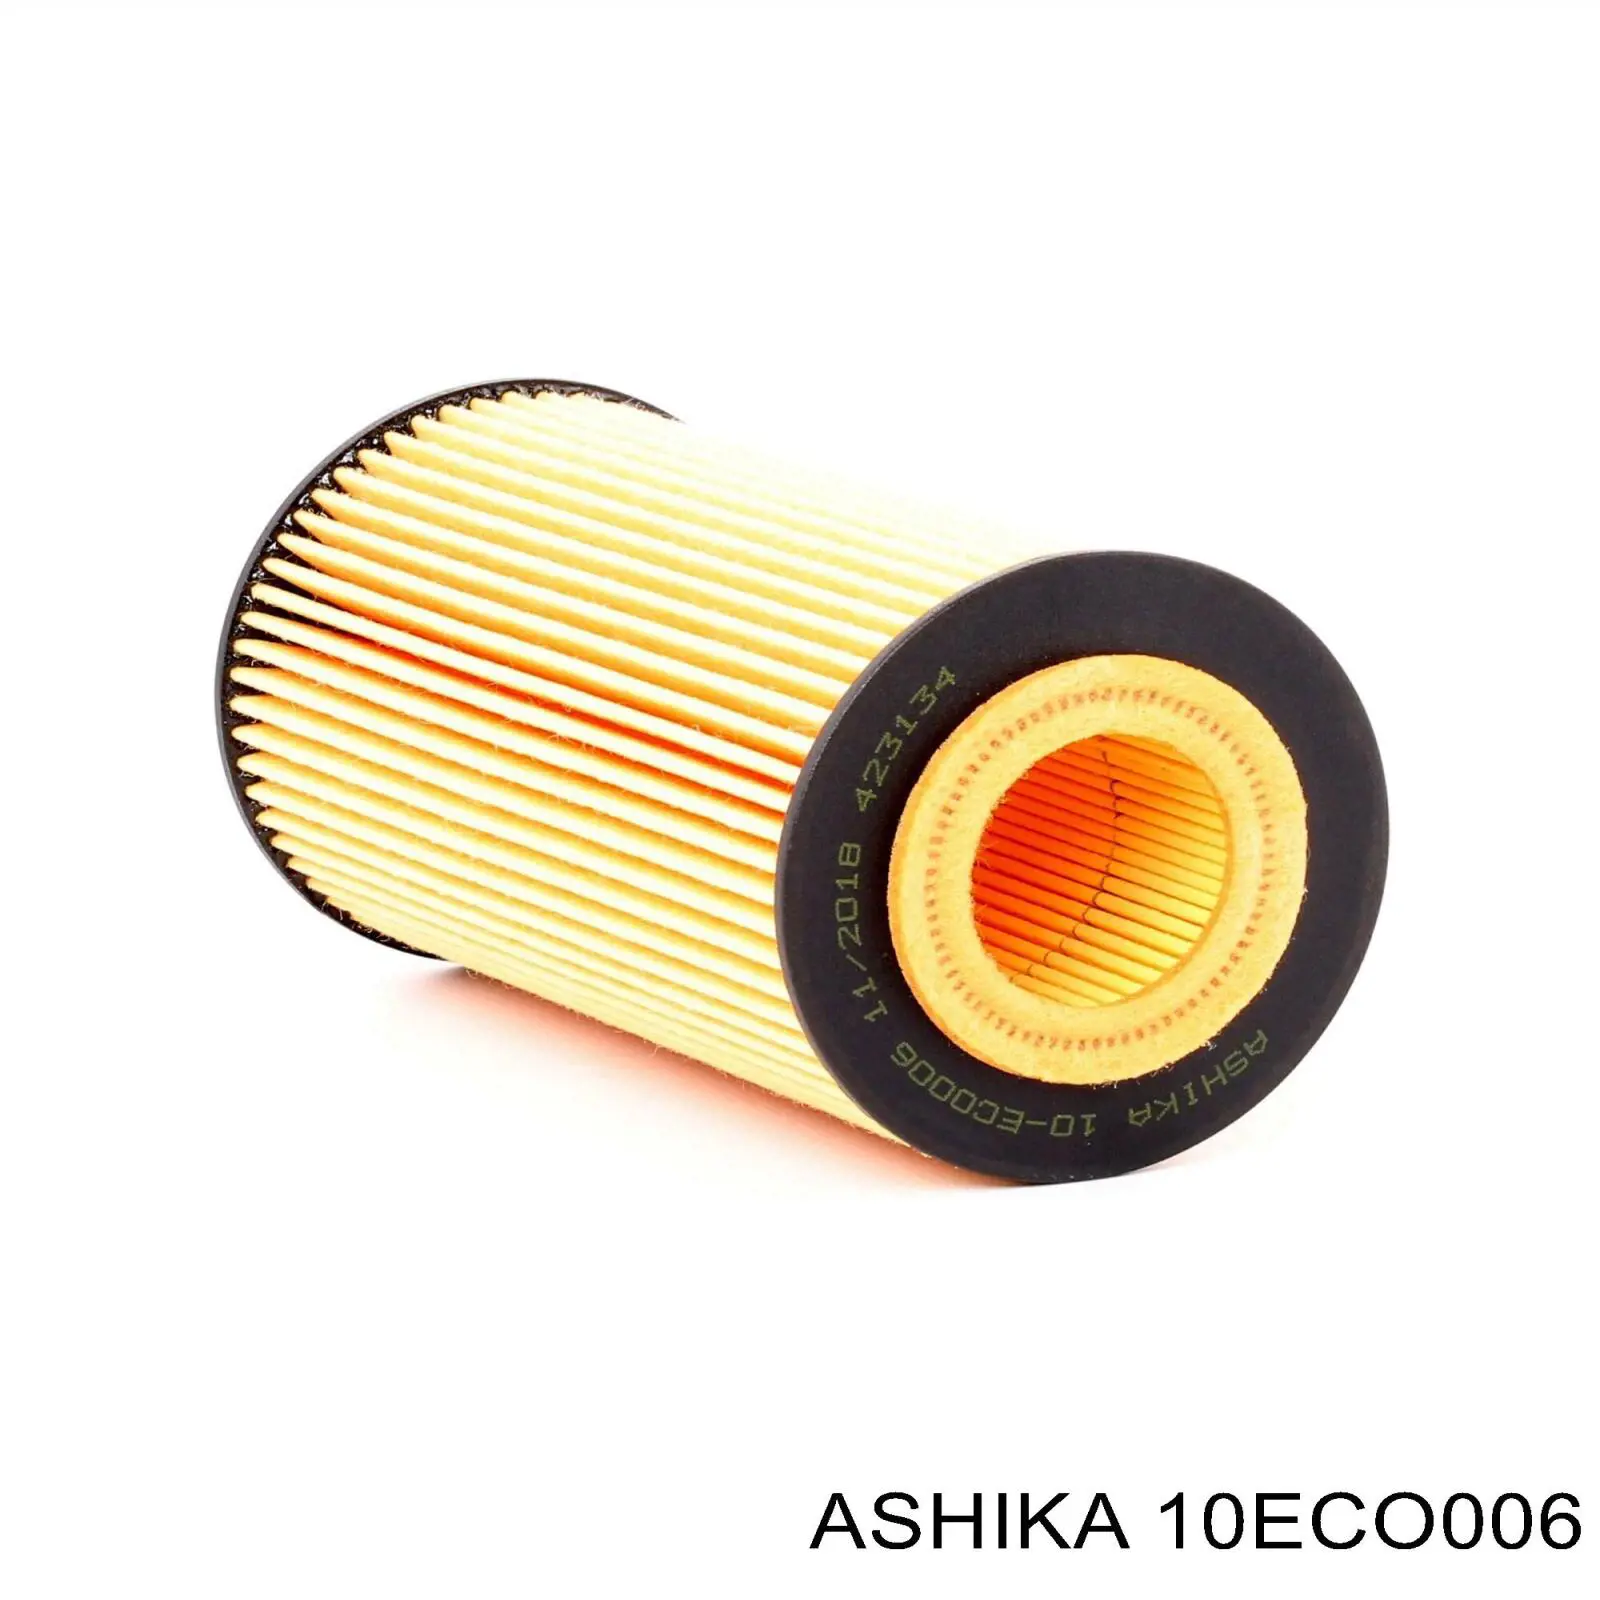 10-ECO006 Ashika filtro de aceite